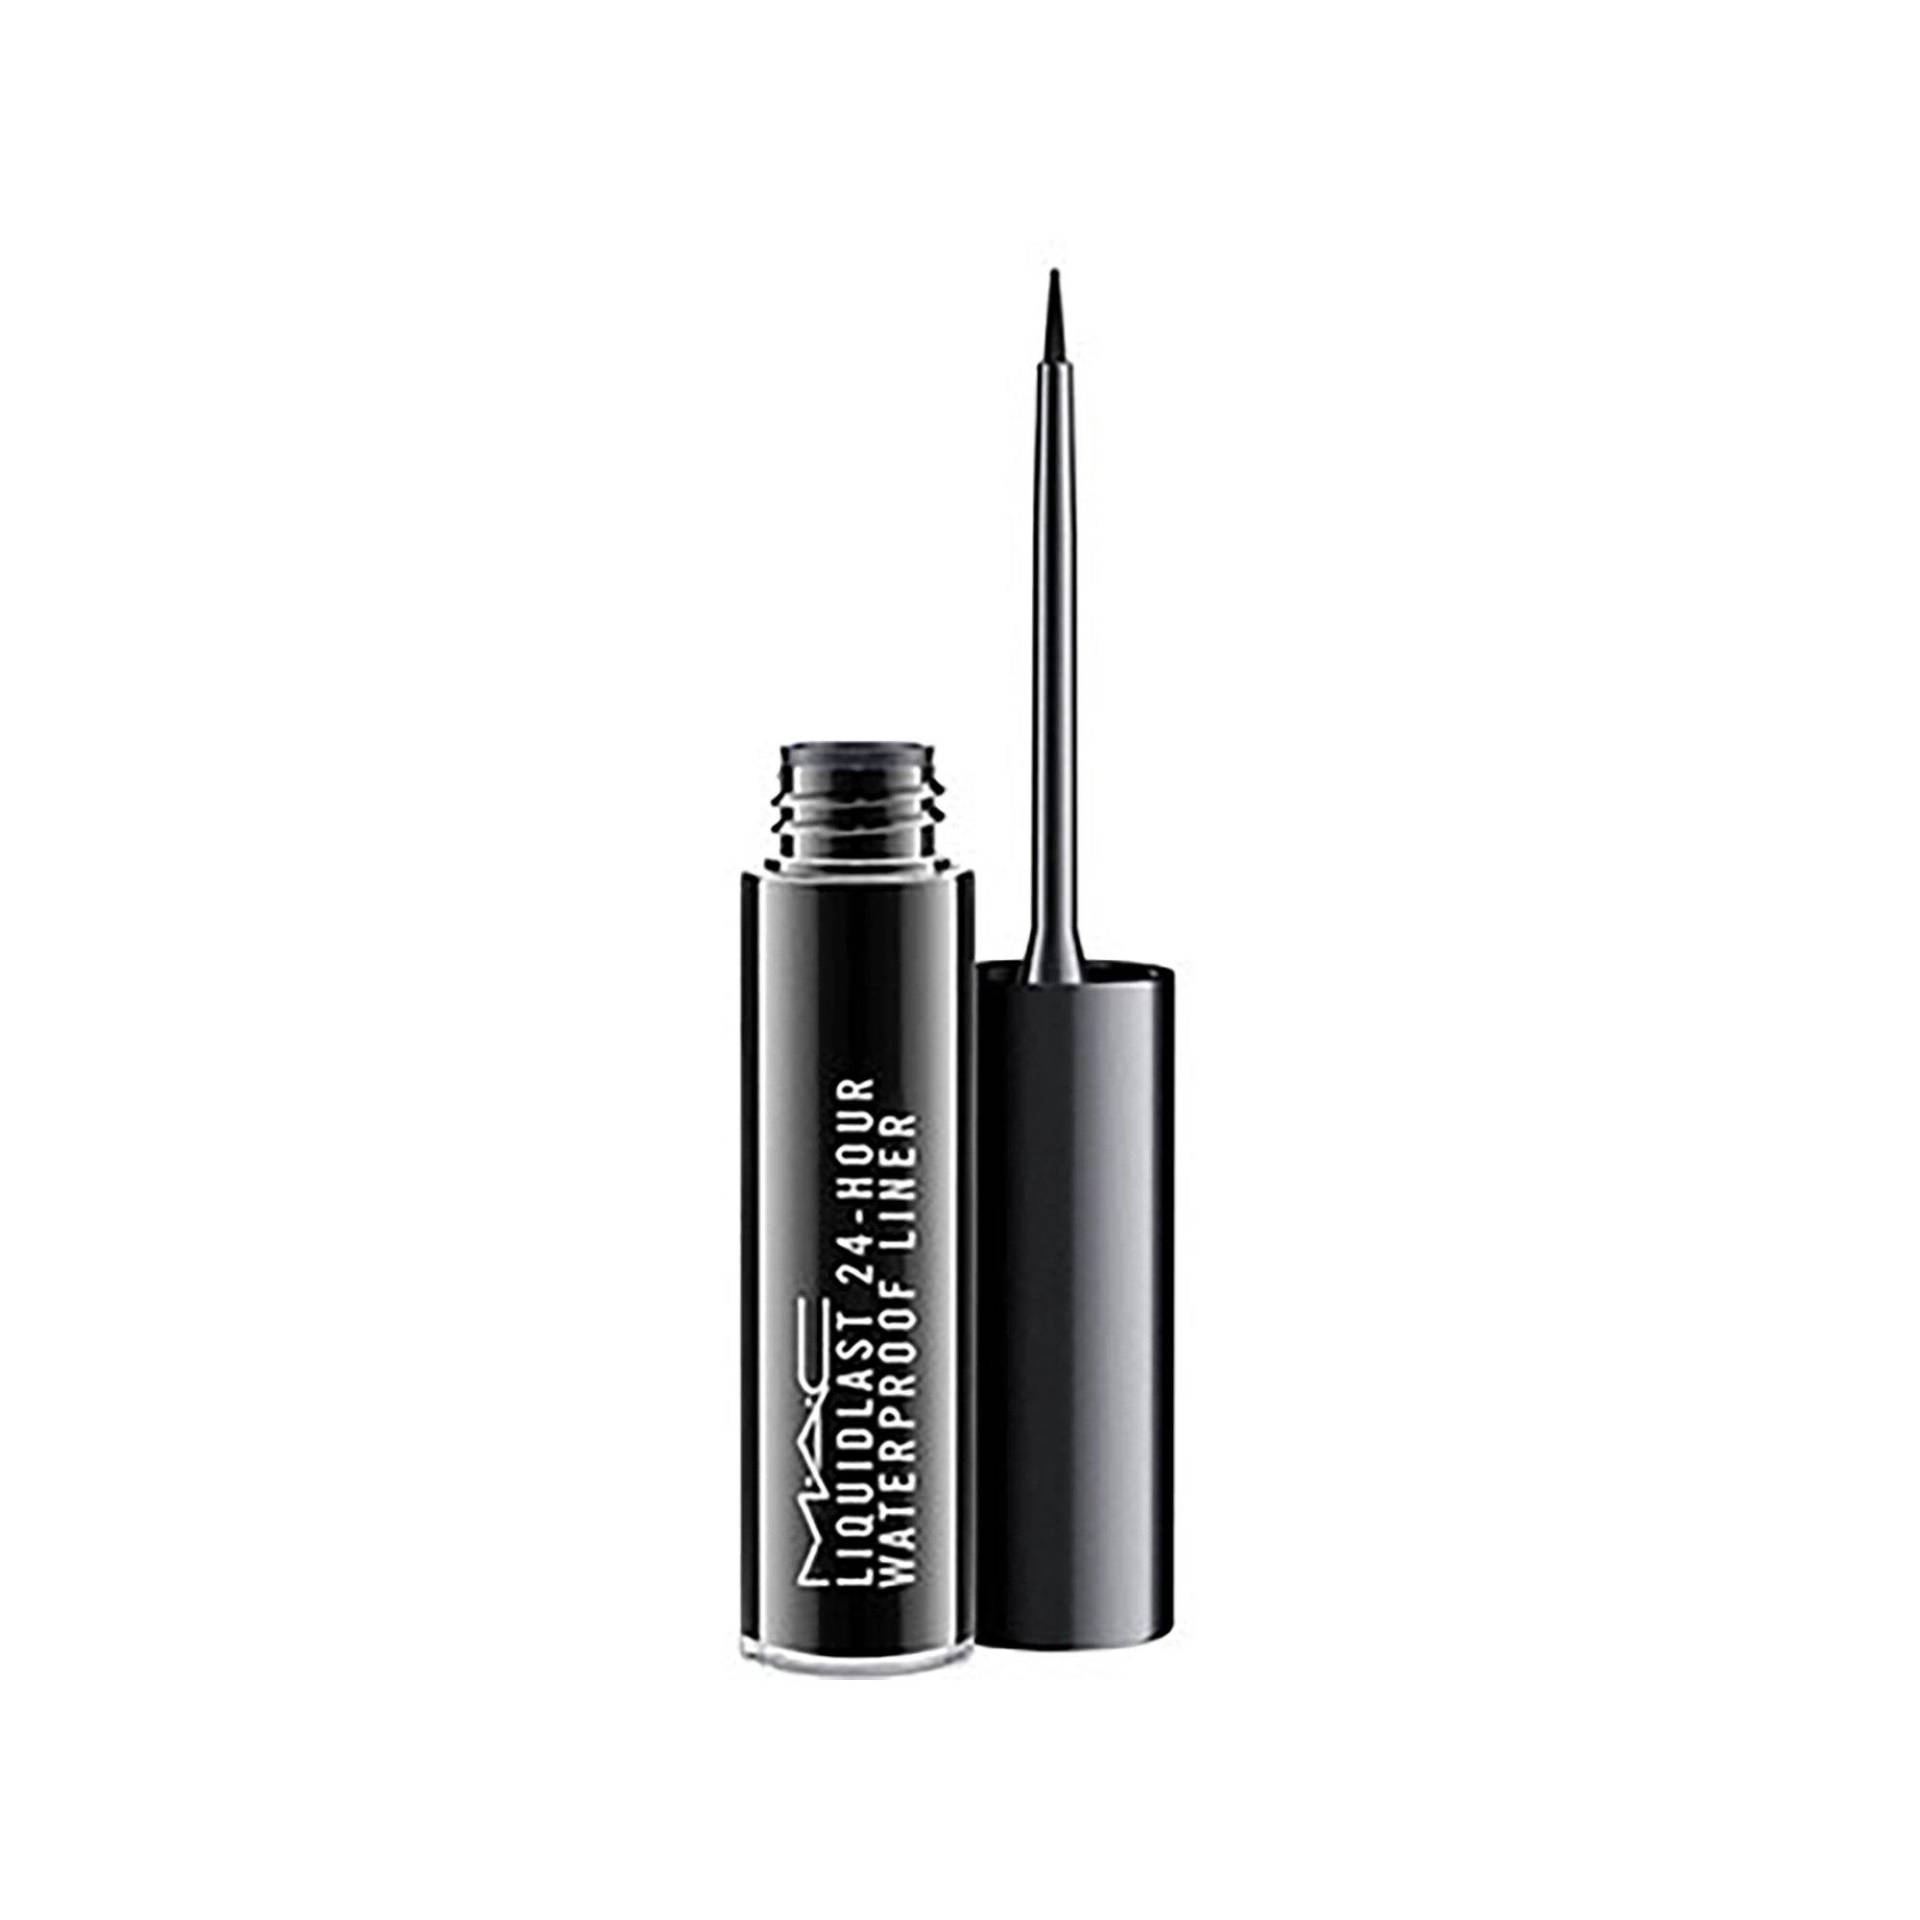 Liquidlast 24-hour Liquid Waterproof Eyeliner Damen Point Black 2.5ml von MAC Cosmetics